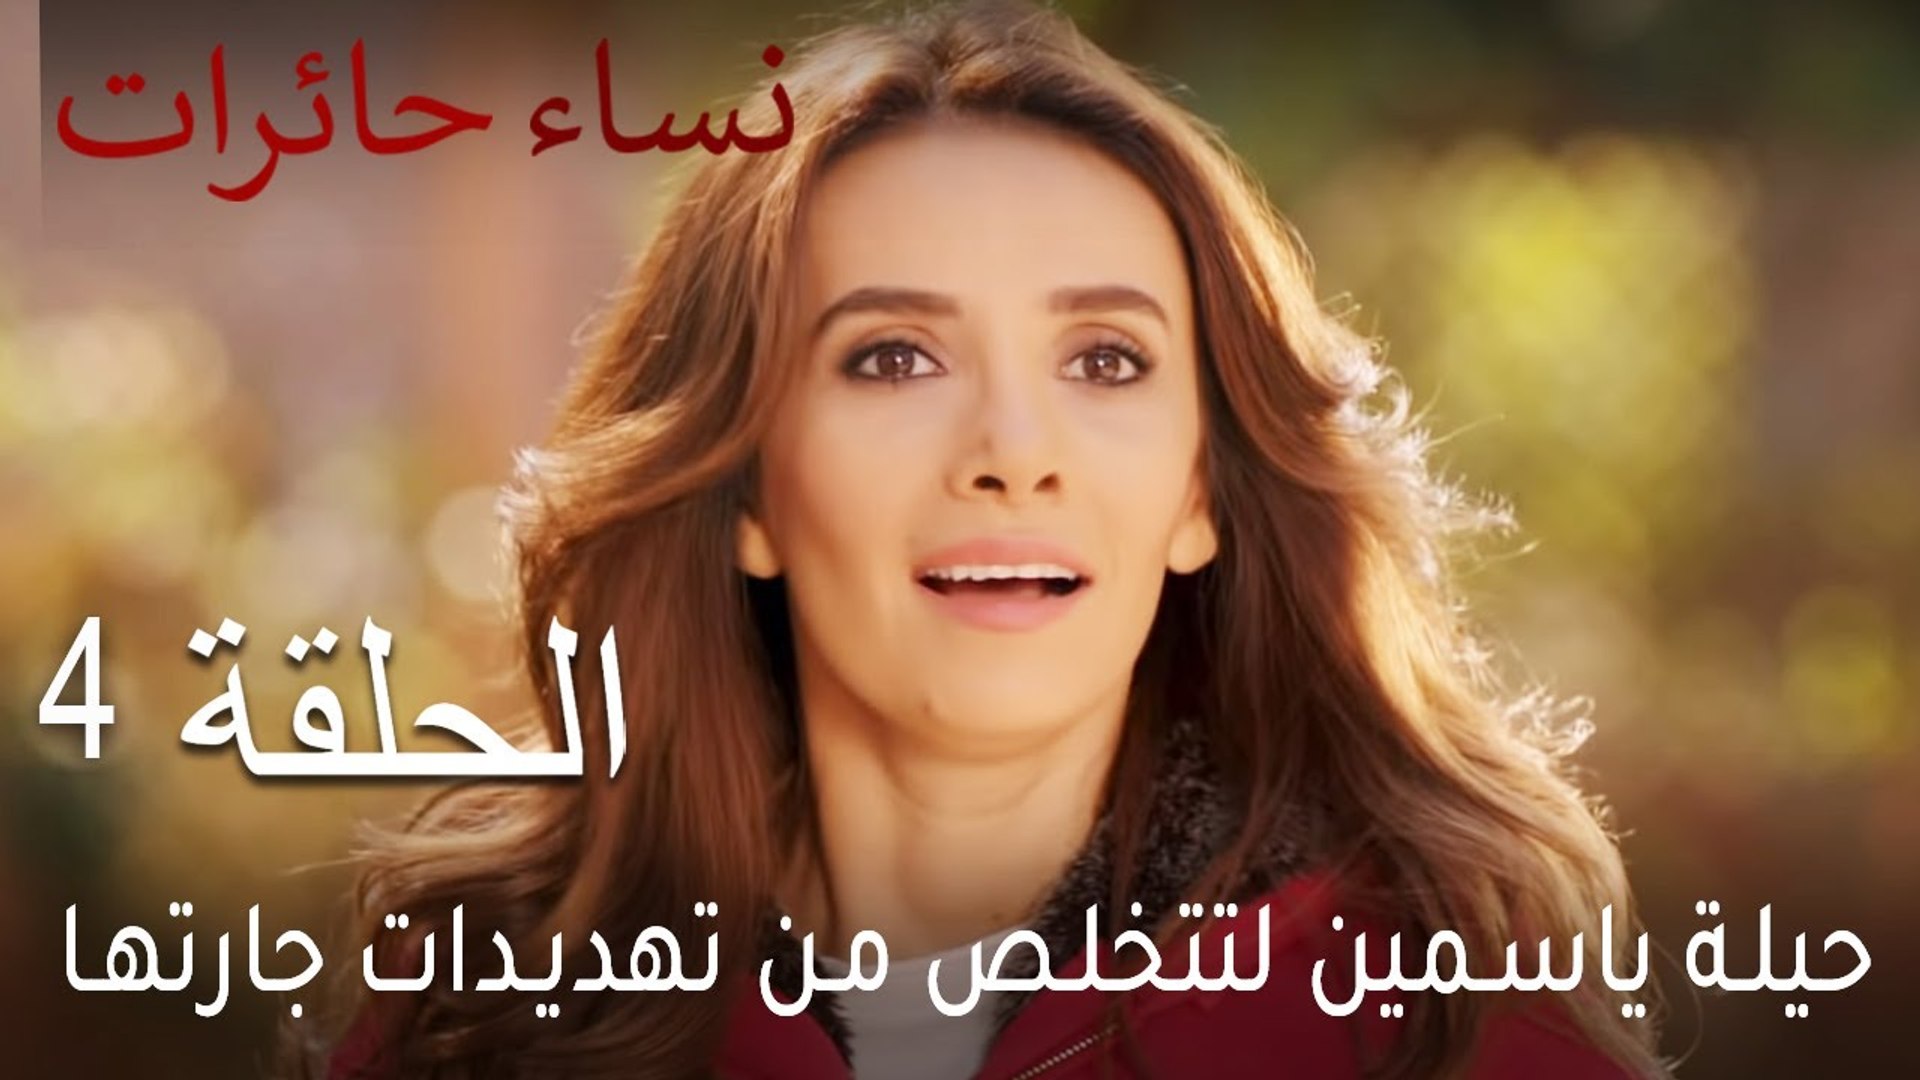 نساء حائرات الحلقة 4 - حيلة ياسمين لتتخلص من تهديدات جارتها - فيديو  Dailymotion